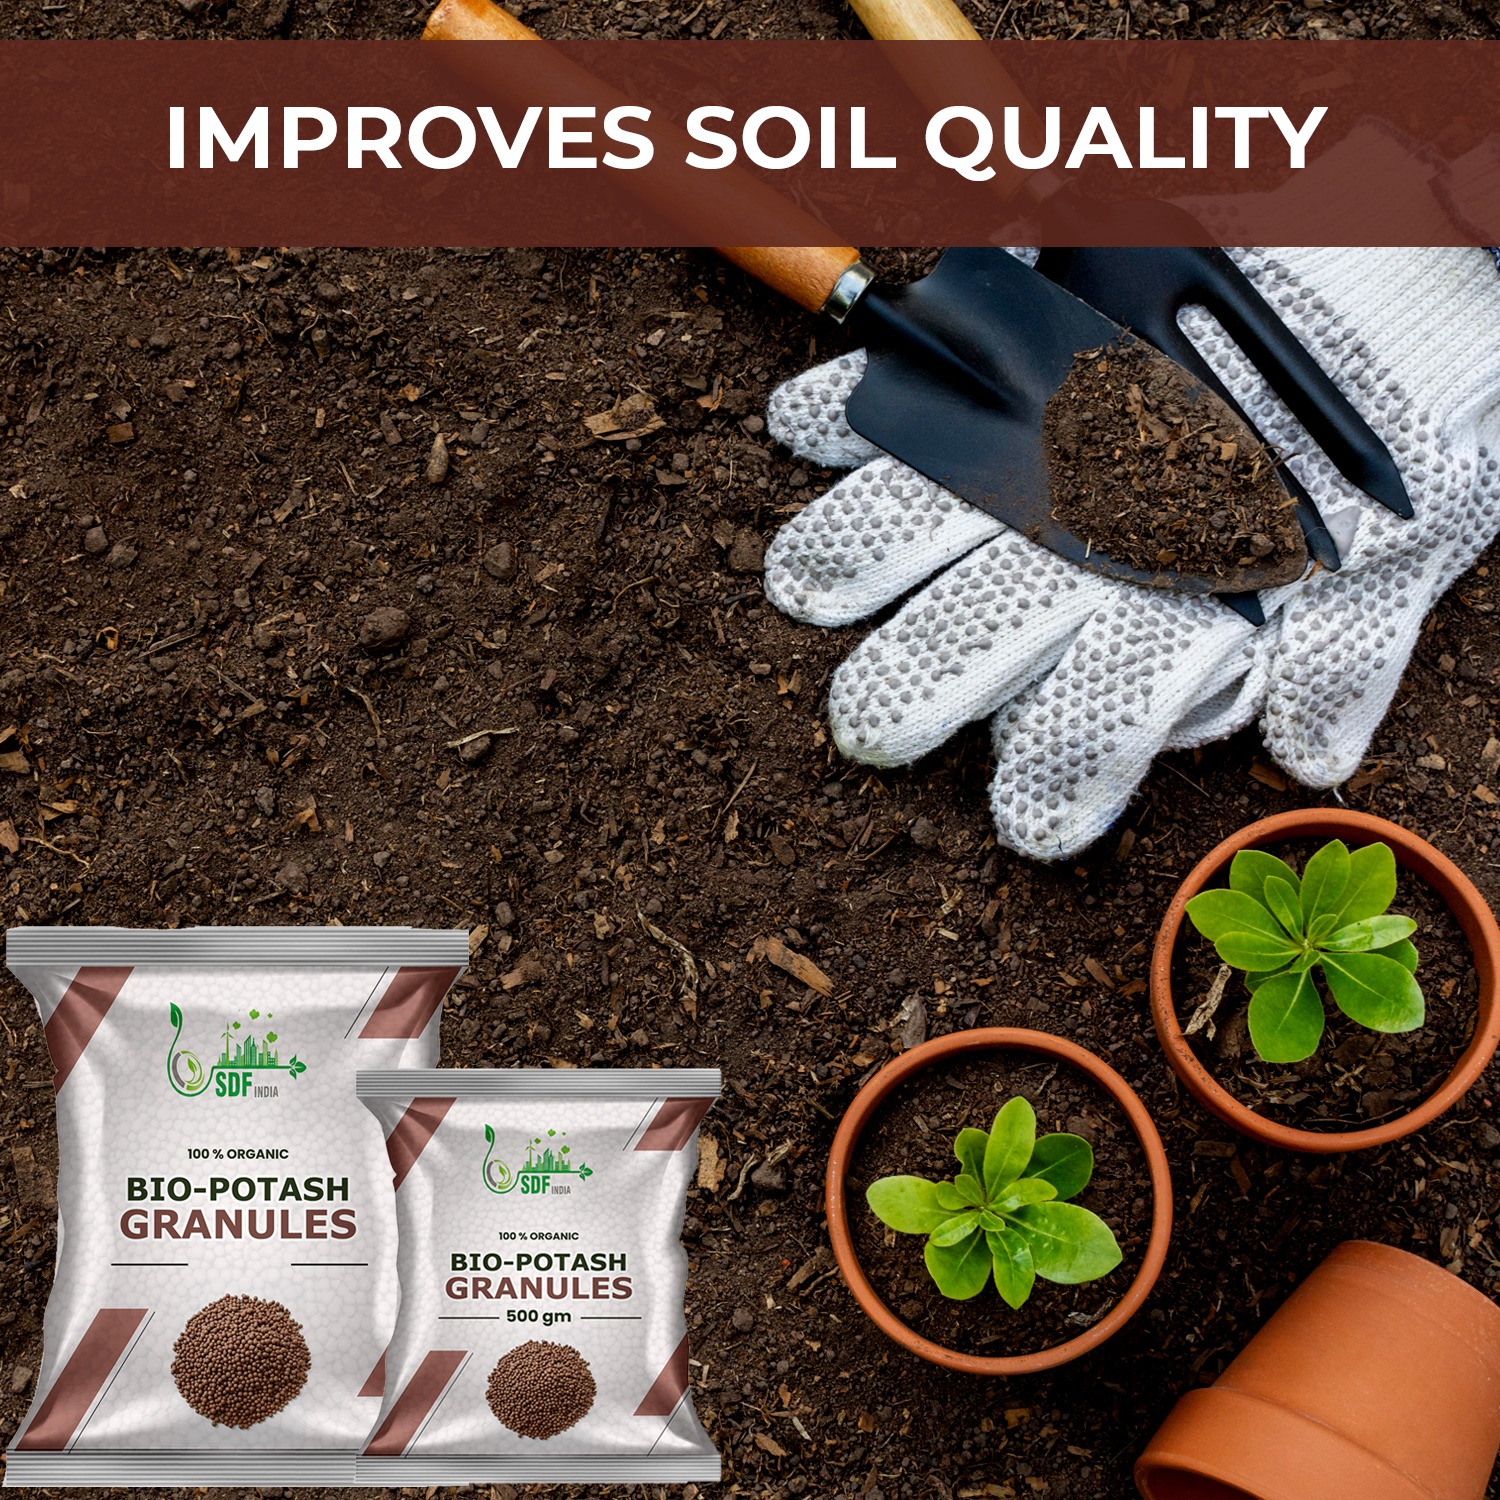 Bio Organic Potash | Essential Fertilizer for Gardening - 10 Kg | Granular Potash Fertiliser for Vegetables, Fruits, Garden Flowers, Agriculture Crops, Indoor & Outdoor Home Plants